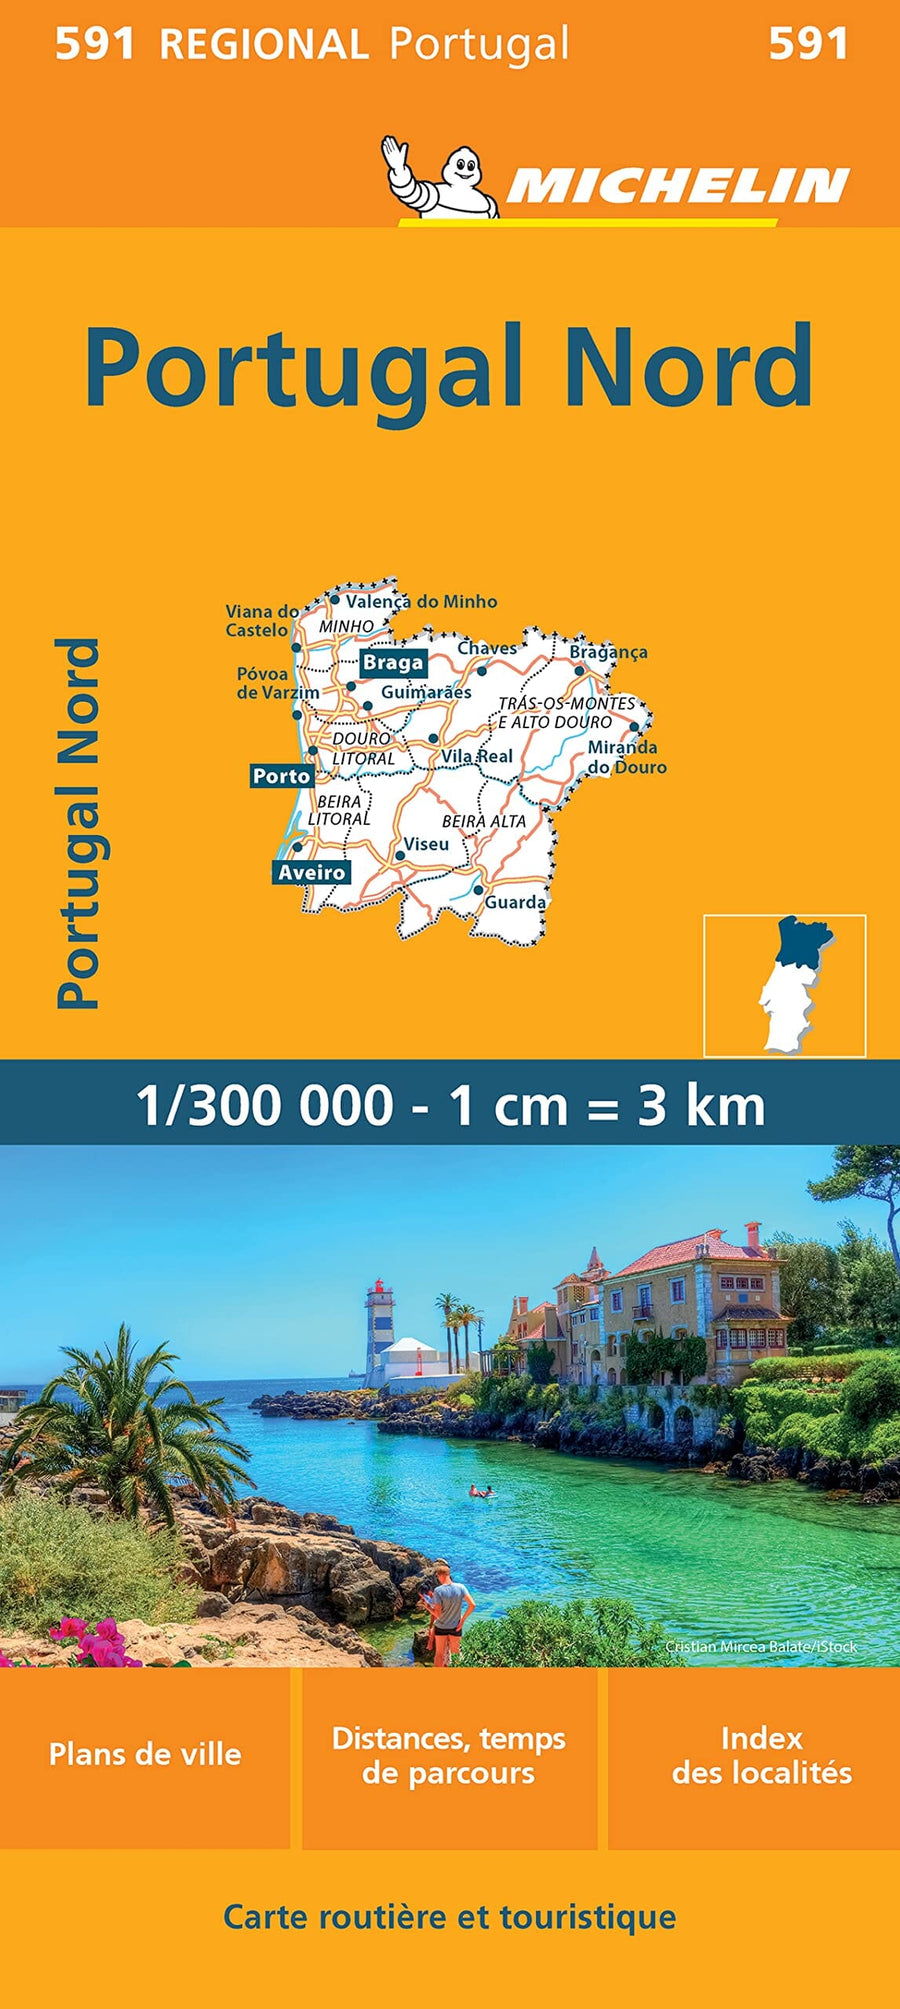 Carte routière n° 591 - Portugal Nord | Michelin carte pliée Michelin 